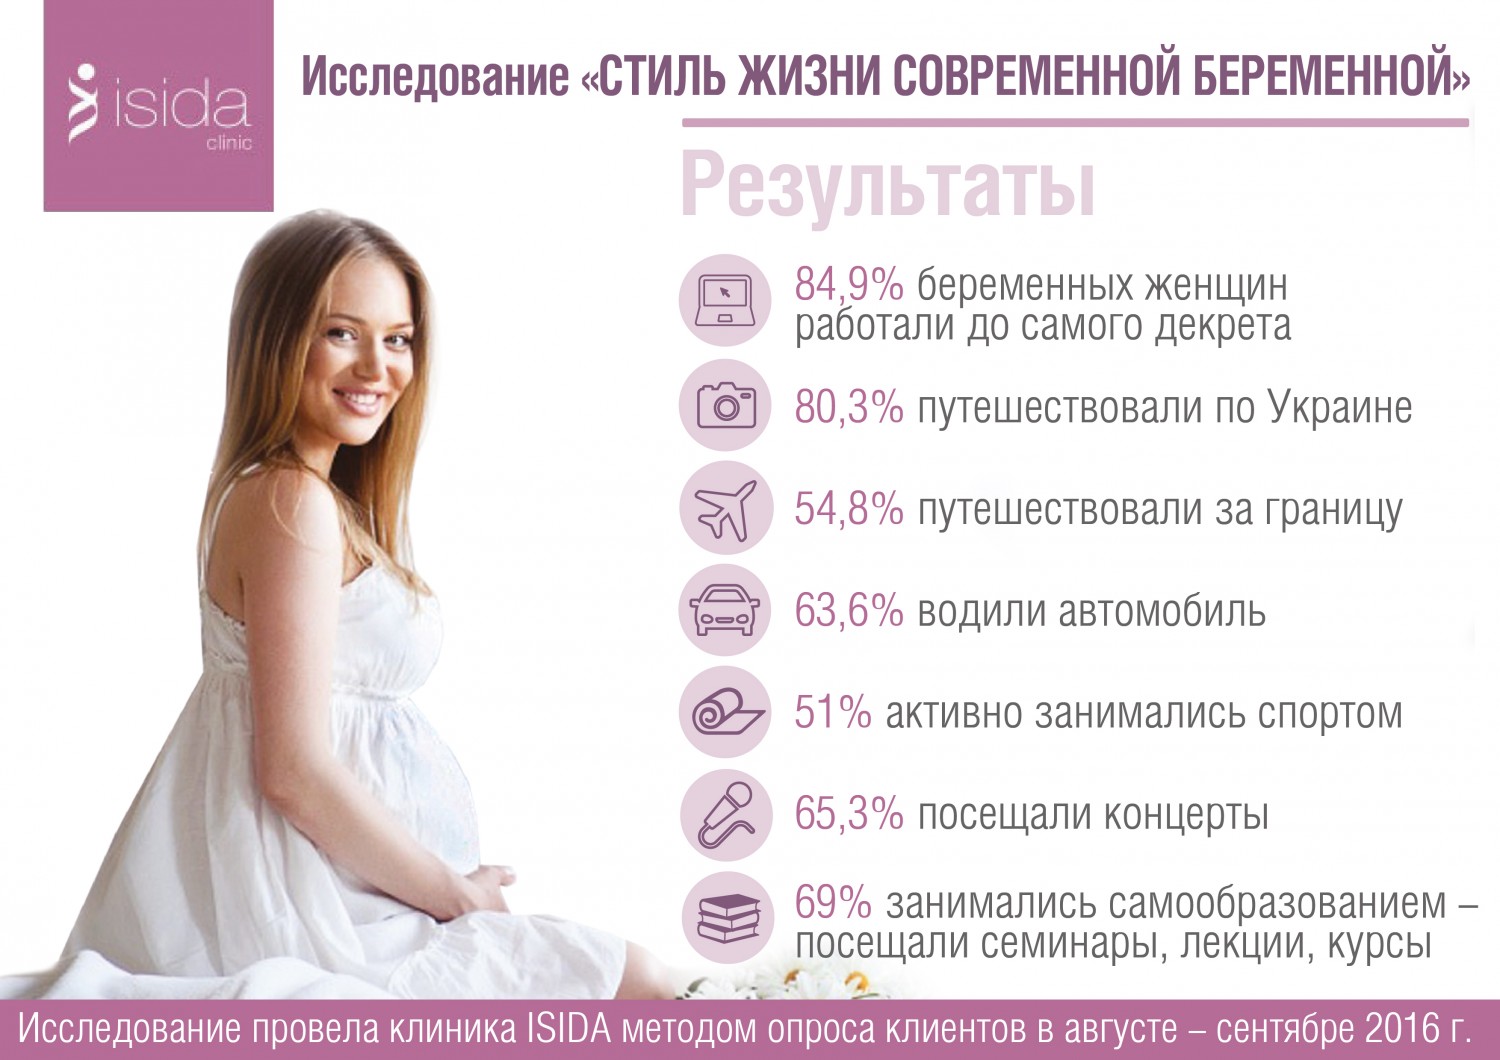 Согласно исследованиям, 85% будущих мам продолжает работу во время беременности